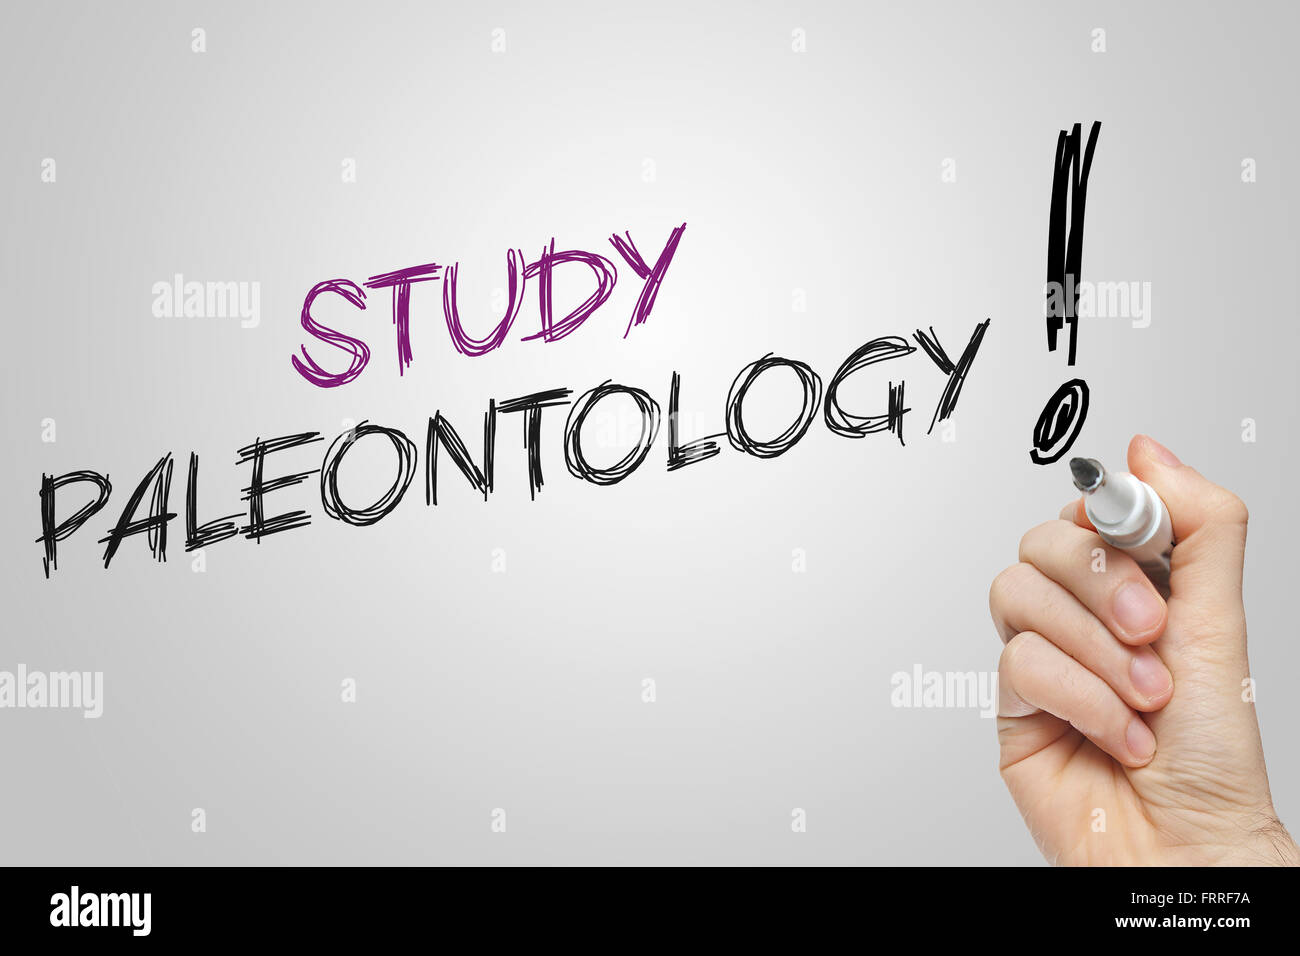 Handschrift Studie Paläontologie auf grauem Hintergrund Stockfoto